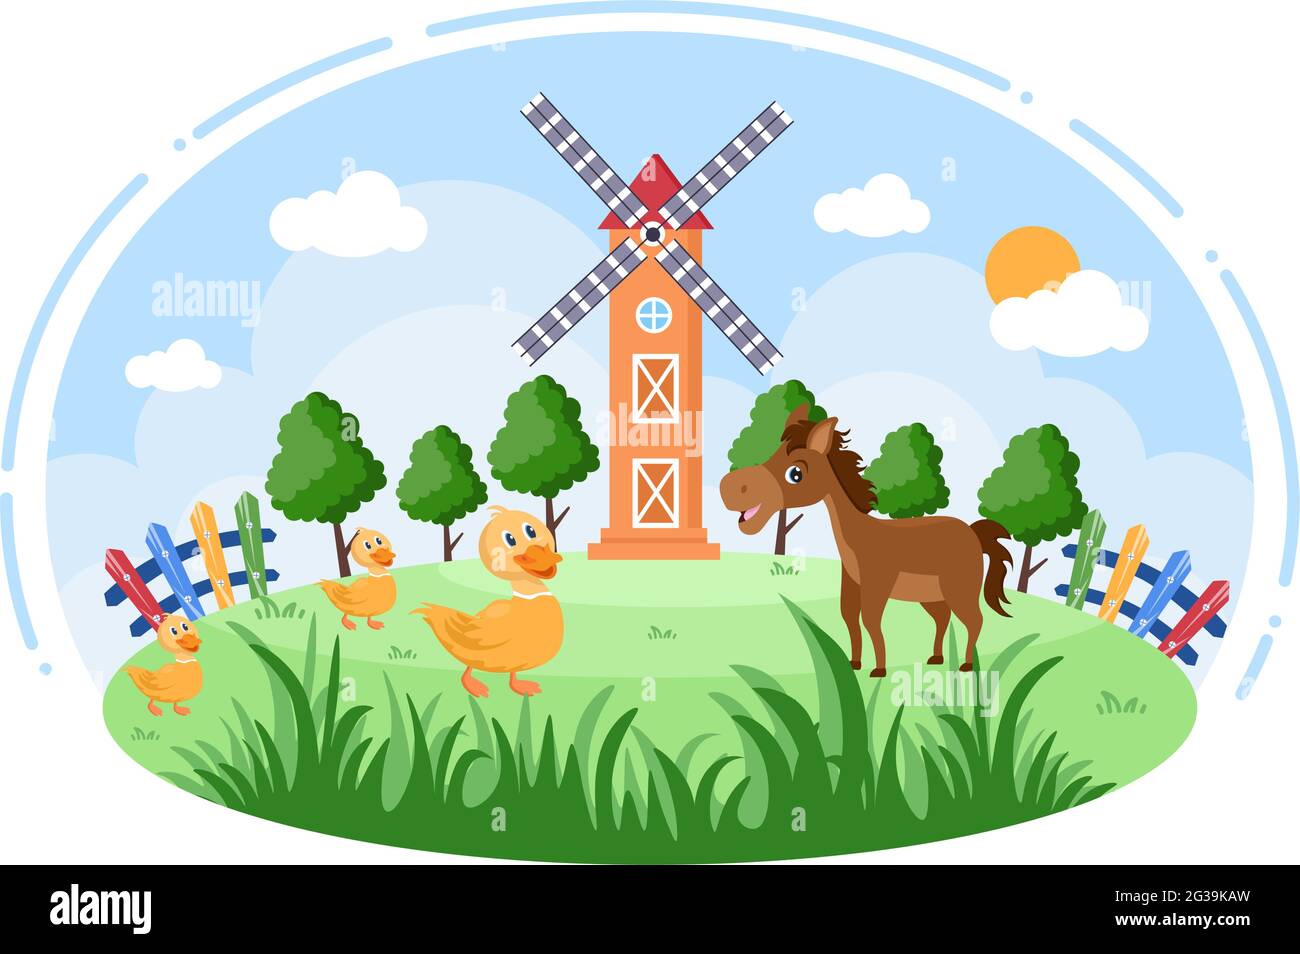 Cute Cartoon Farm Animals Vector Illustration With Cow Horse